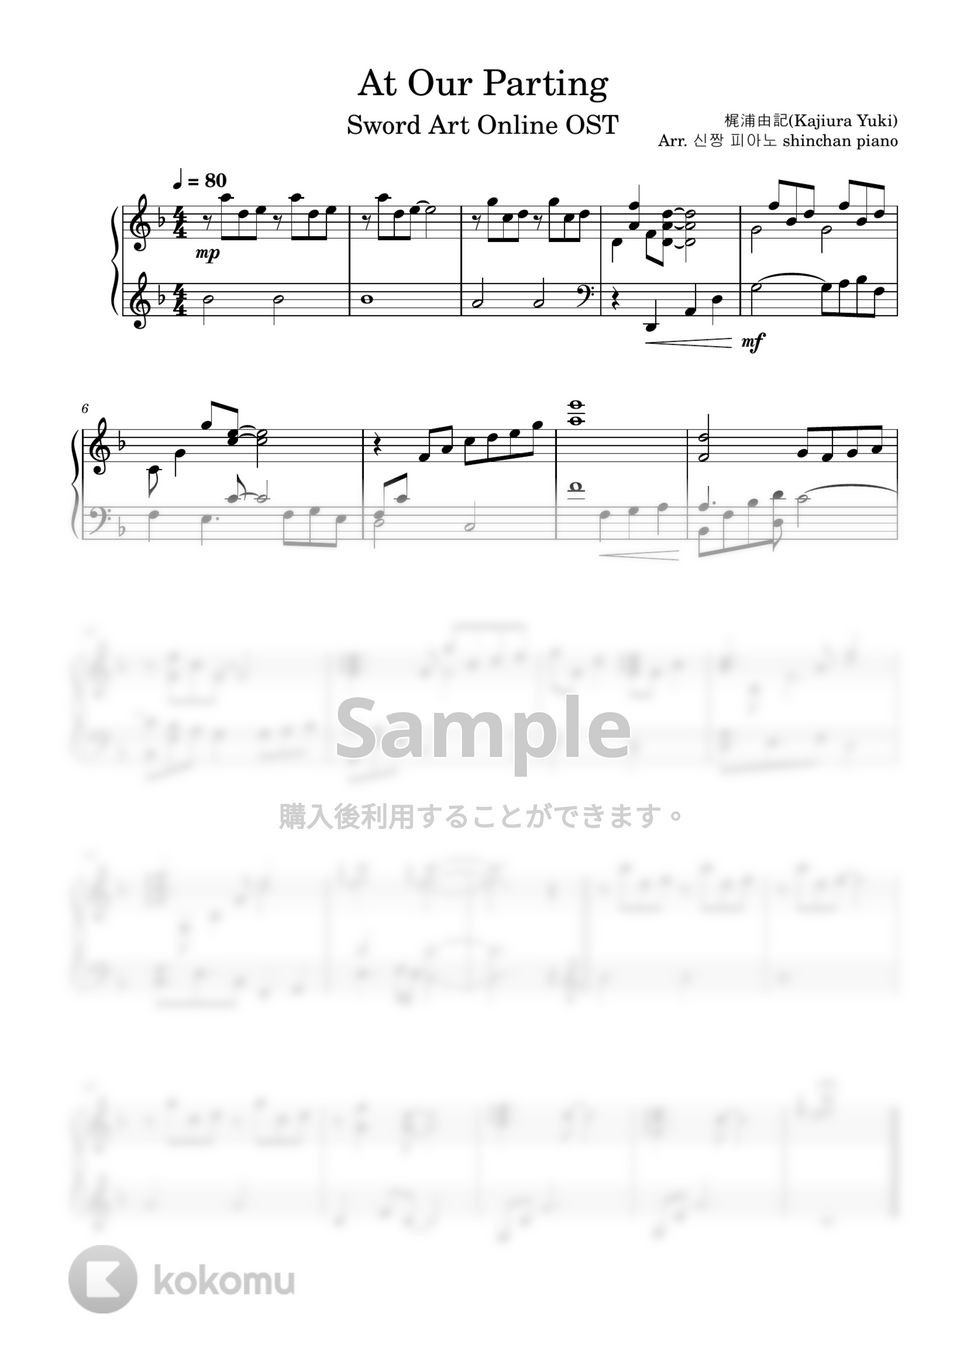 梶浦由記 - At Our Parting (ソードアートオンラインOST) by しんちゃんピアノ